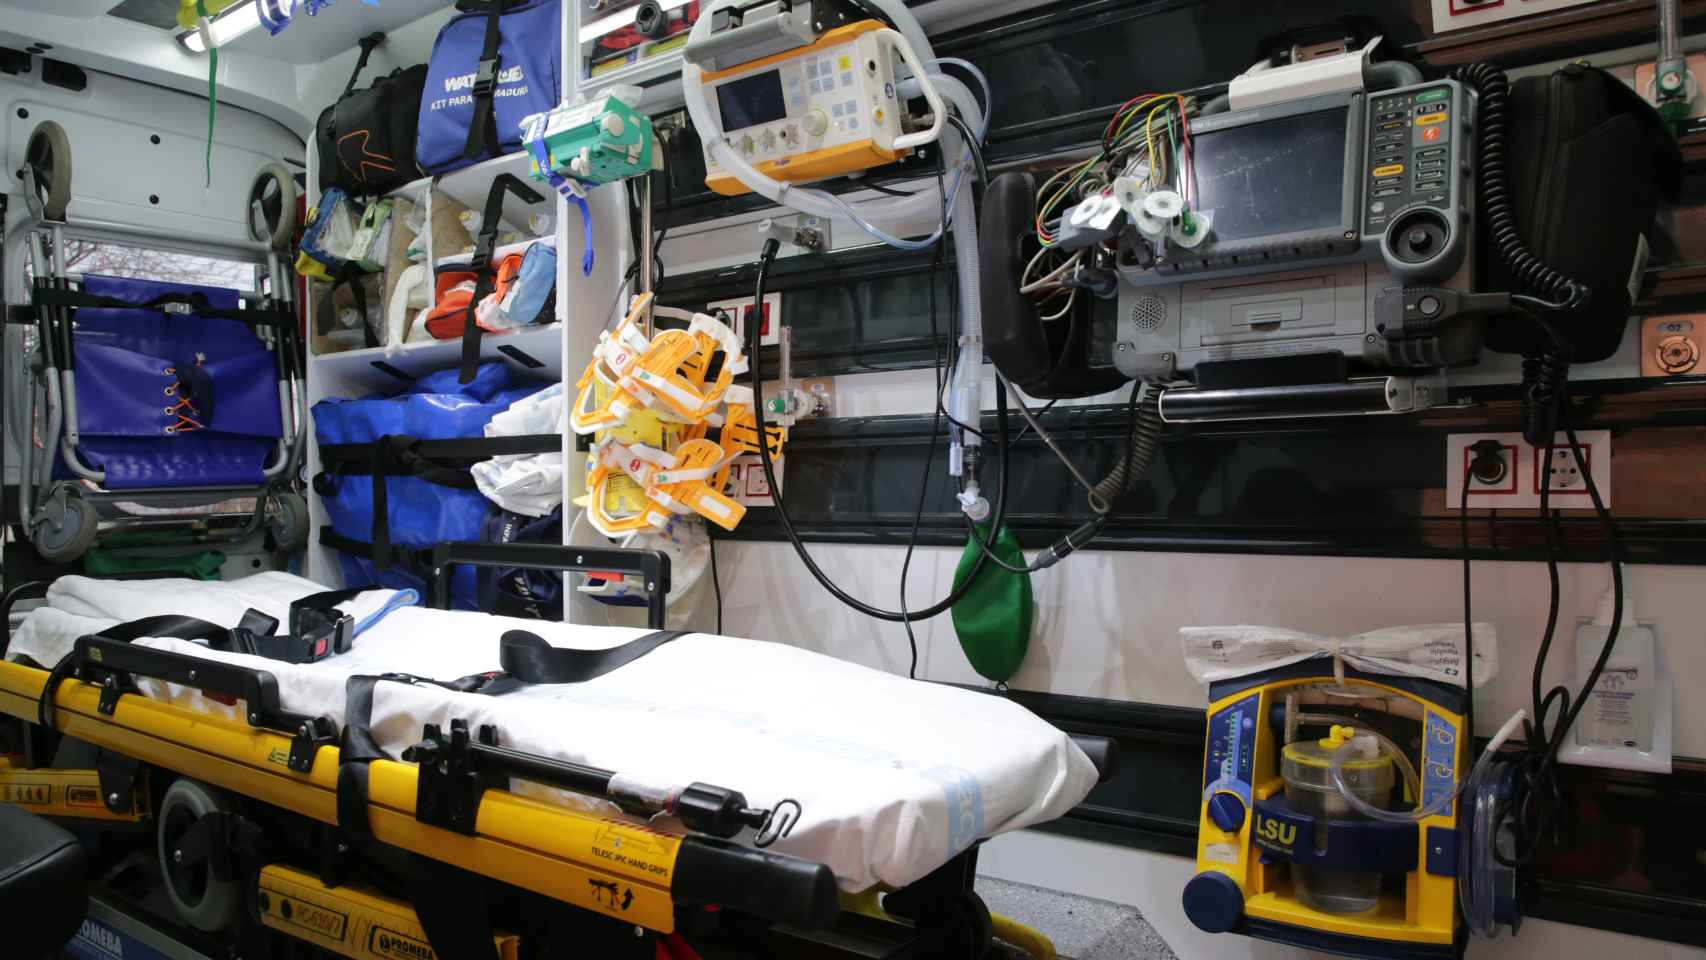 Interior de una ambulancia del 112.